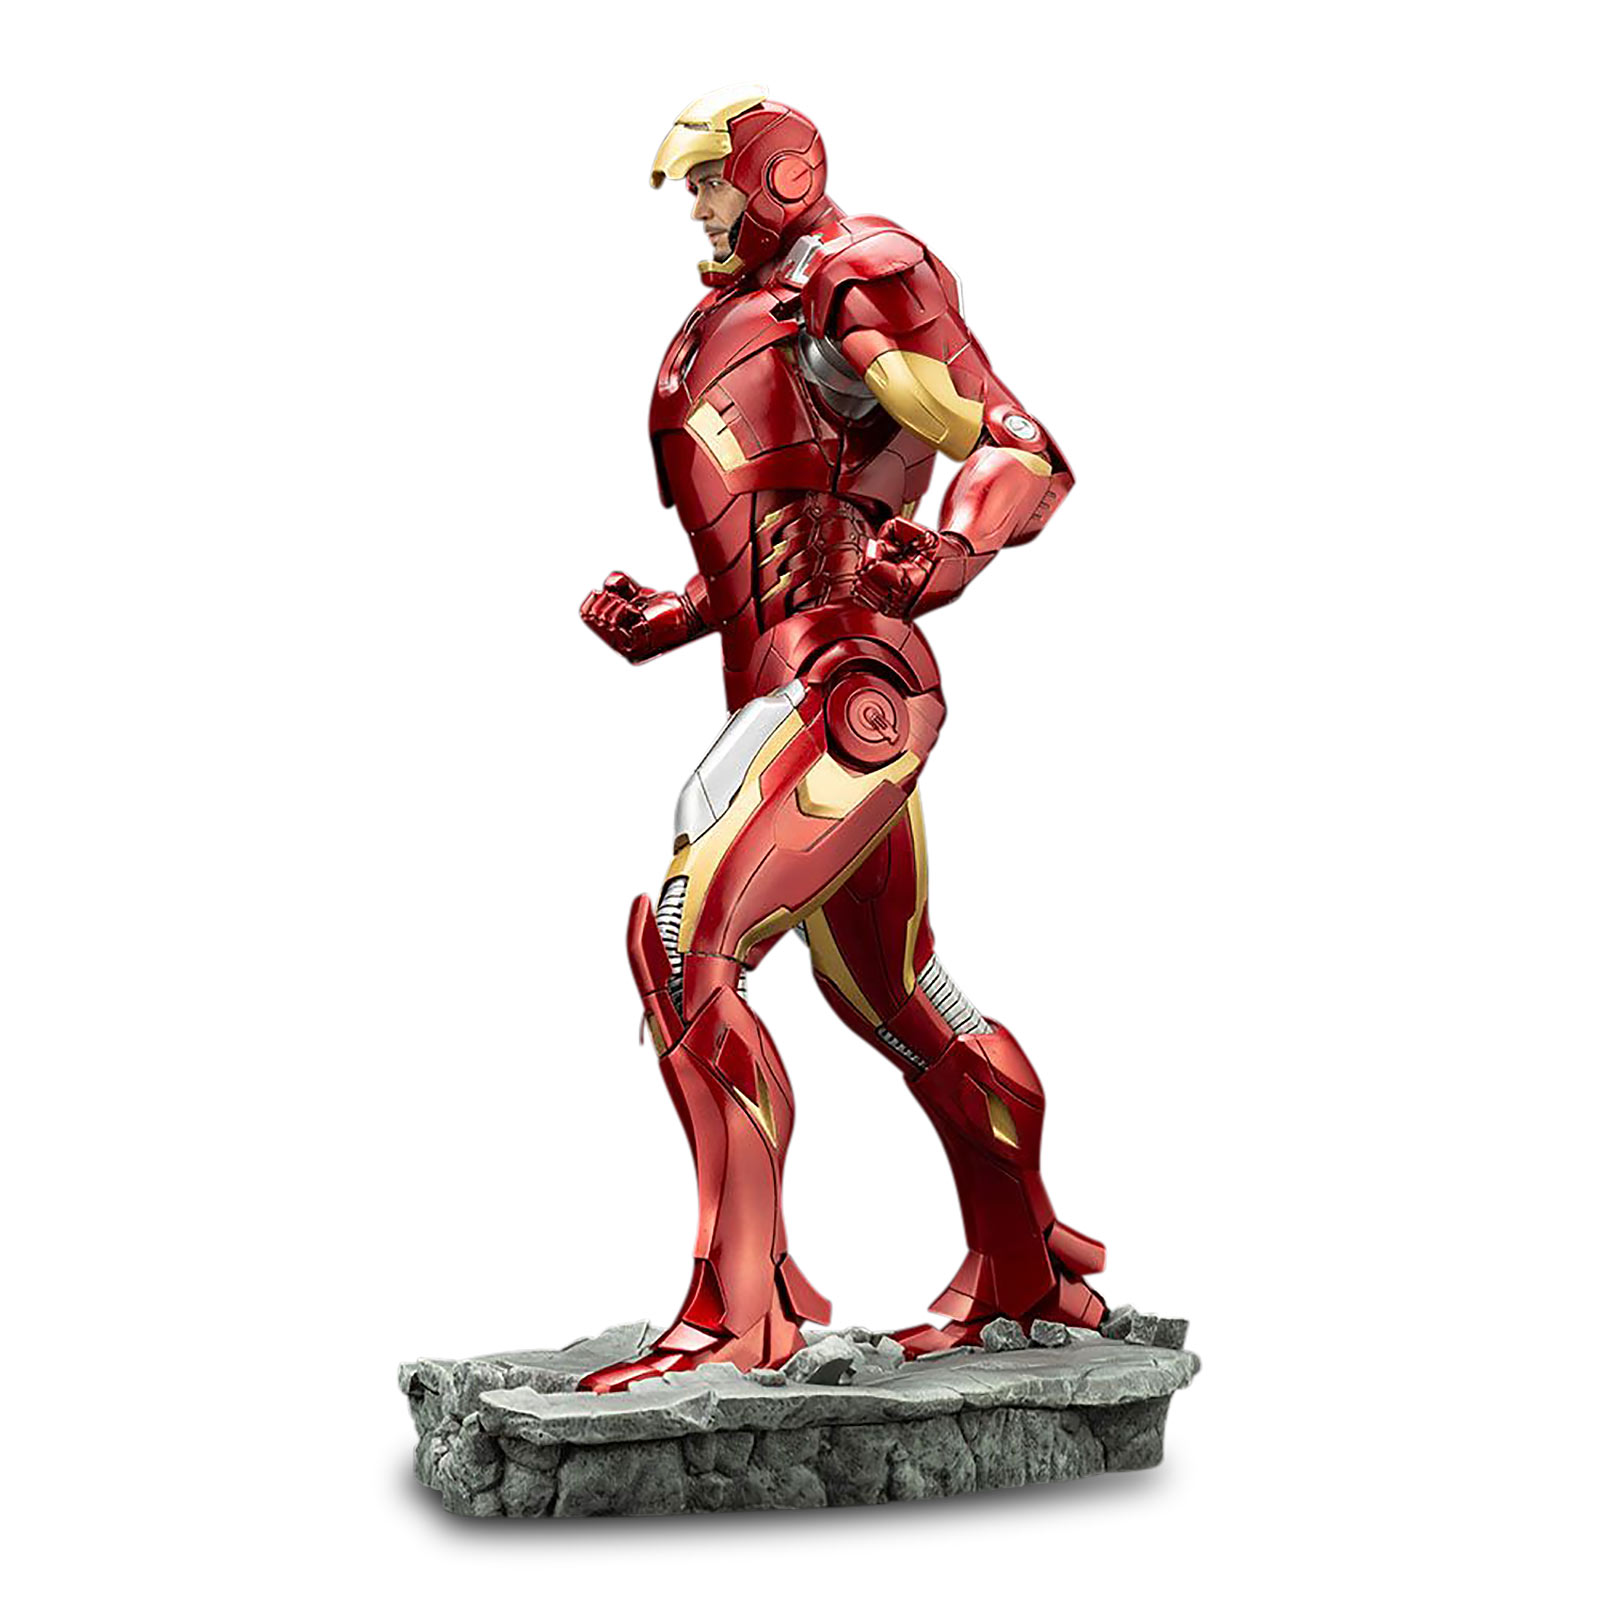 Avengers - Iron Man Mark 7 ARTFX+ Standbeeld